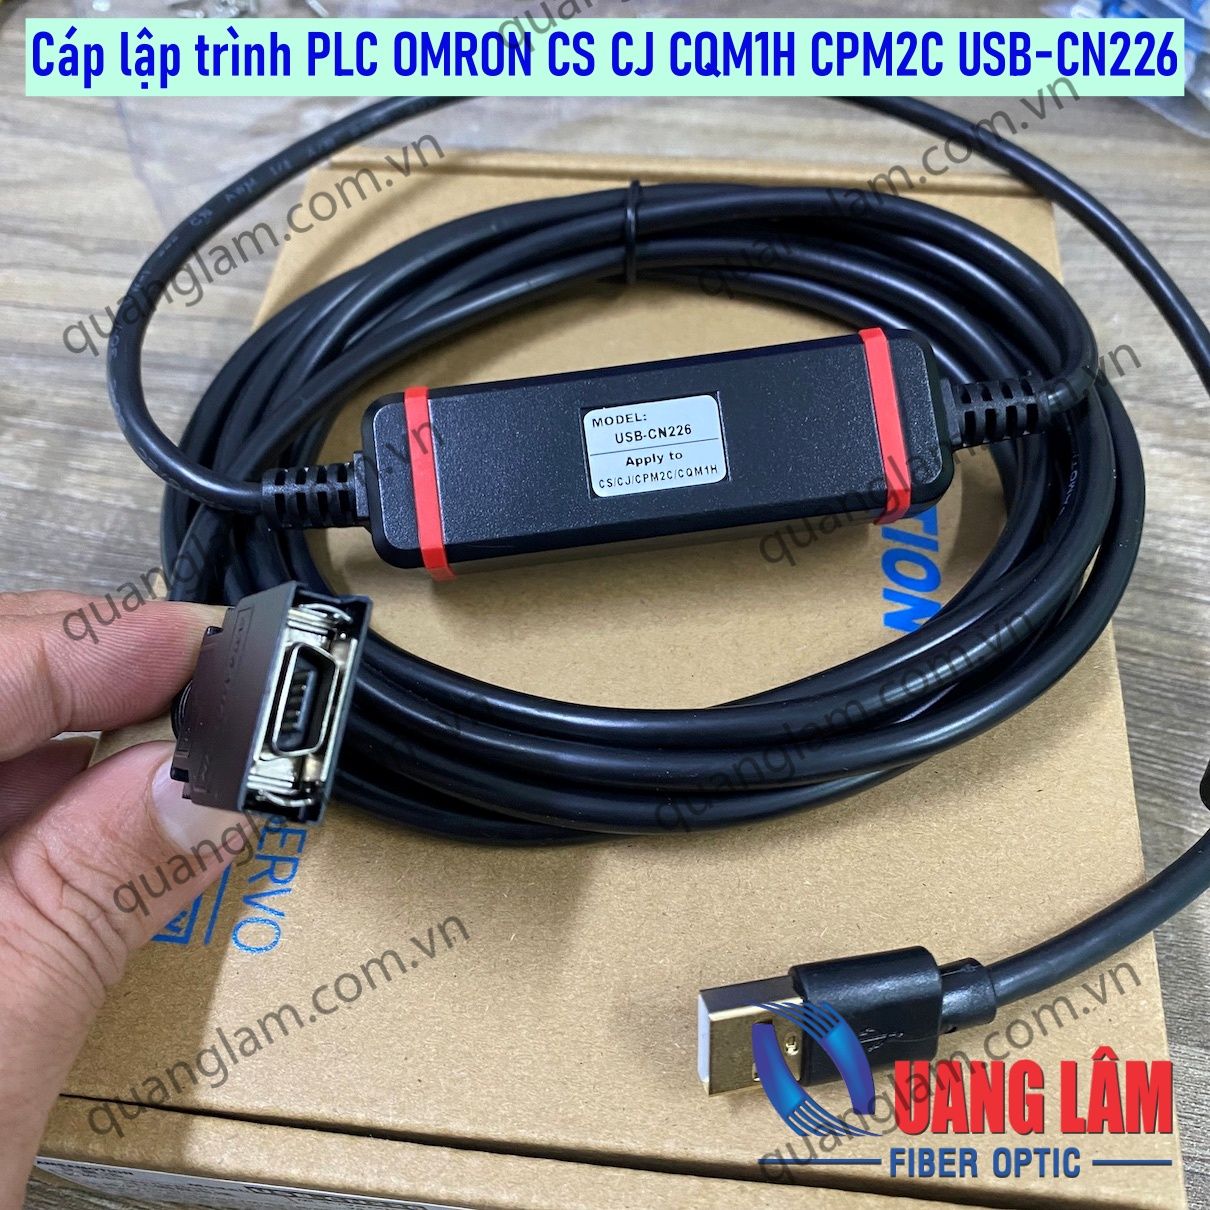 Cáp lập trình PLC OMRON CS CJ CQM1H CPM2C USB-CN226